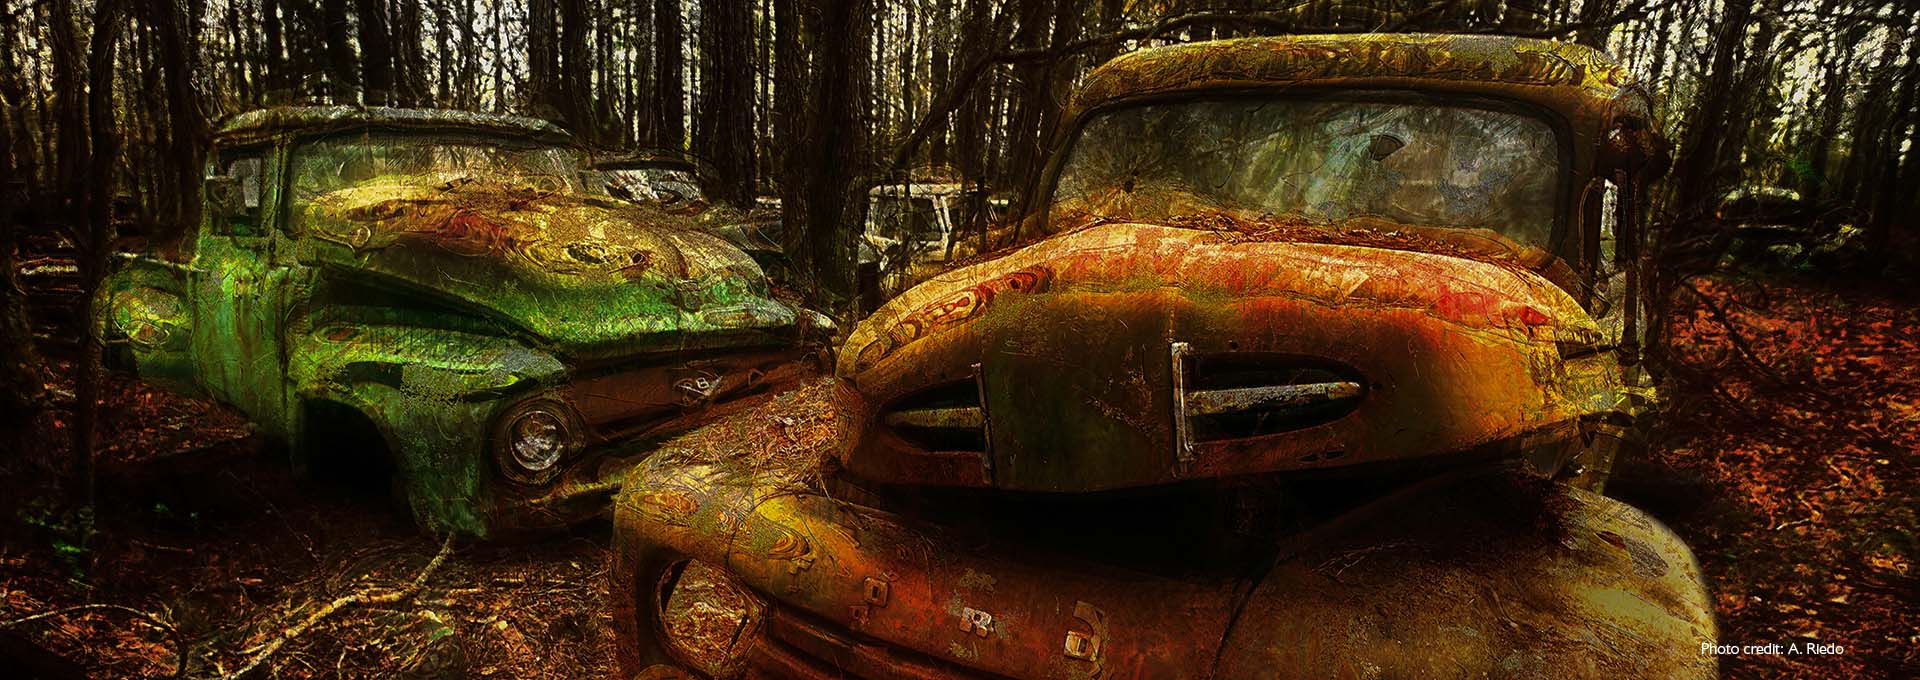 Изображение двух старых ржавых зеленых и коричневых автомобилей на автомобильном кладбище в лесу, сфотографированное пользователями слуховых аппаратов Bernafon Alpha